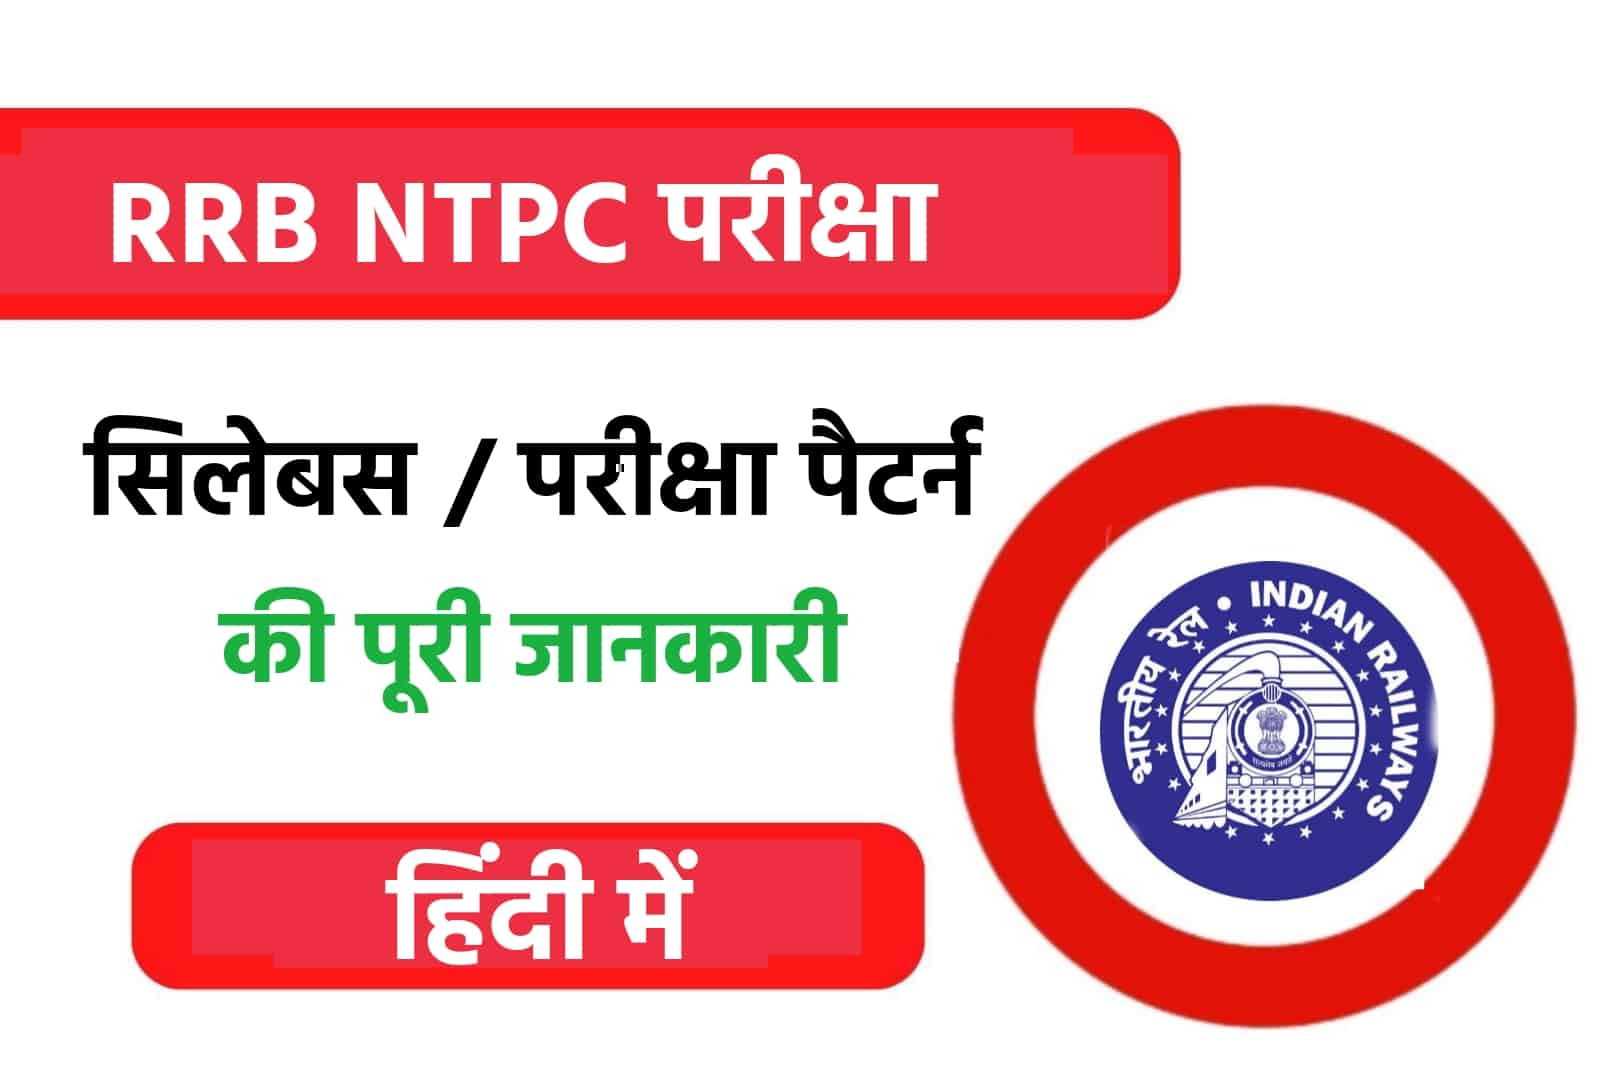 RRB NTPC Syllabus In Hindi | CBT -1 & CBT -2 सिलेबस और परीक्षा पैटर्न